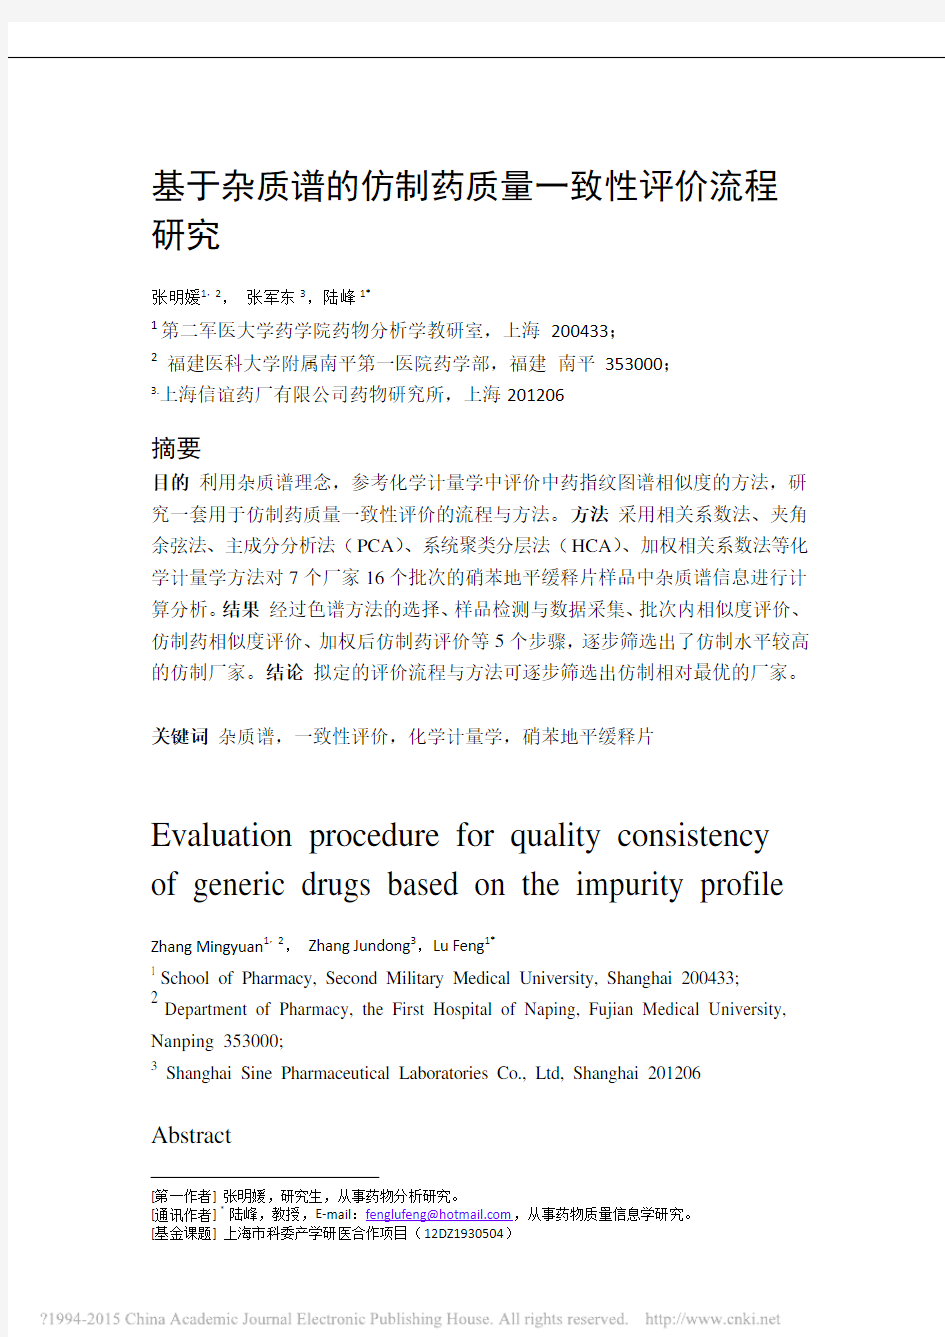 基于杂质谱的仿制药质量一致性评价流程研究_张明媛.